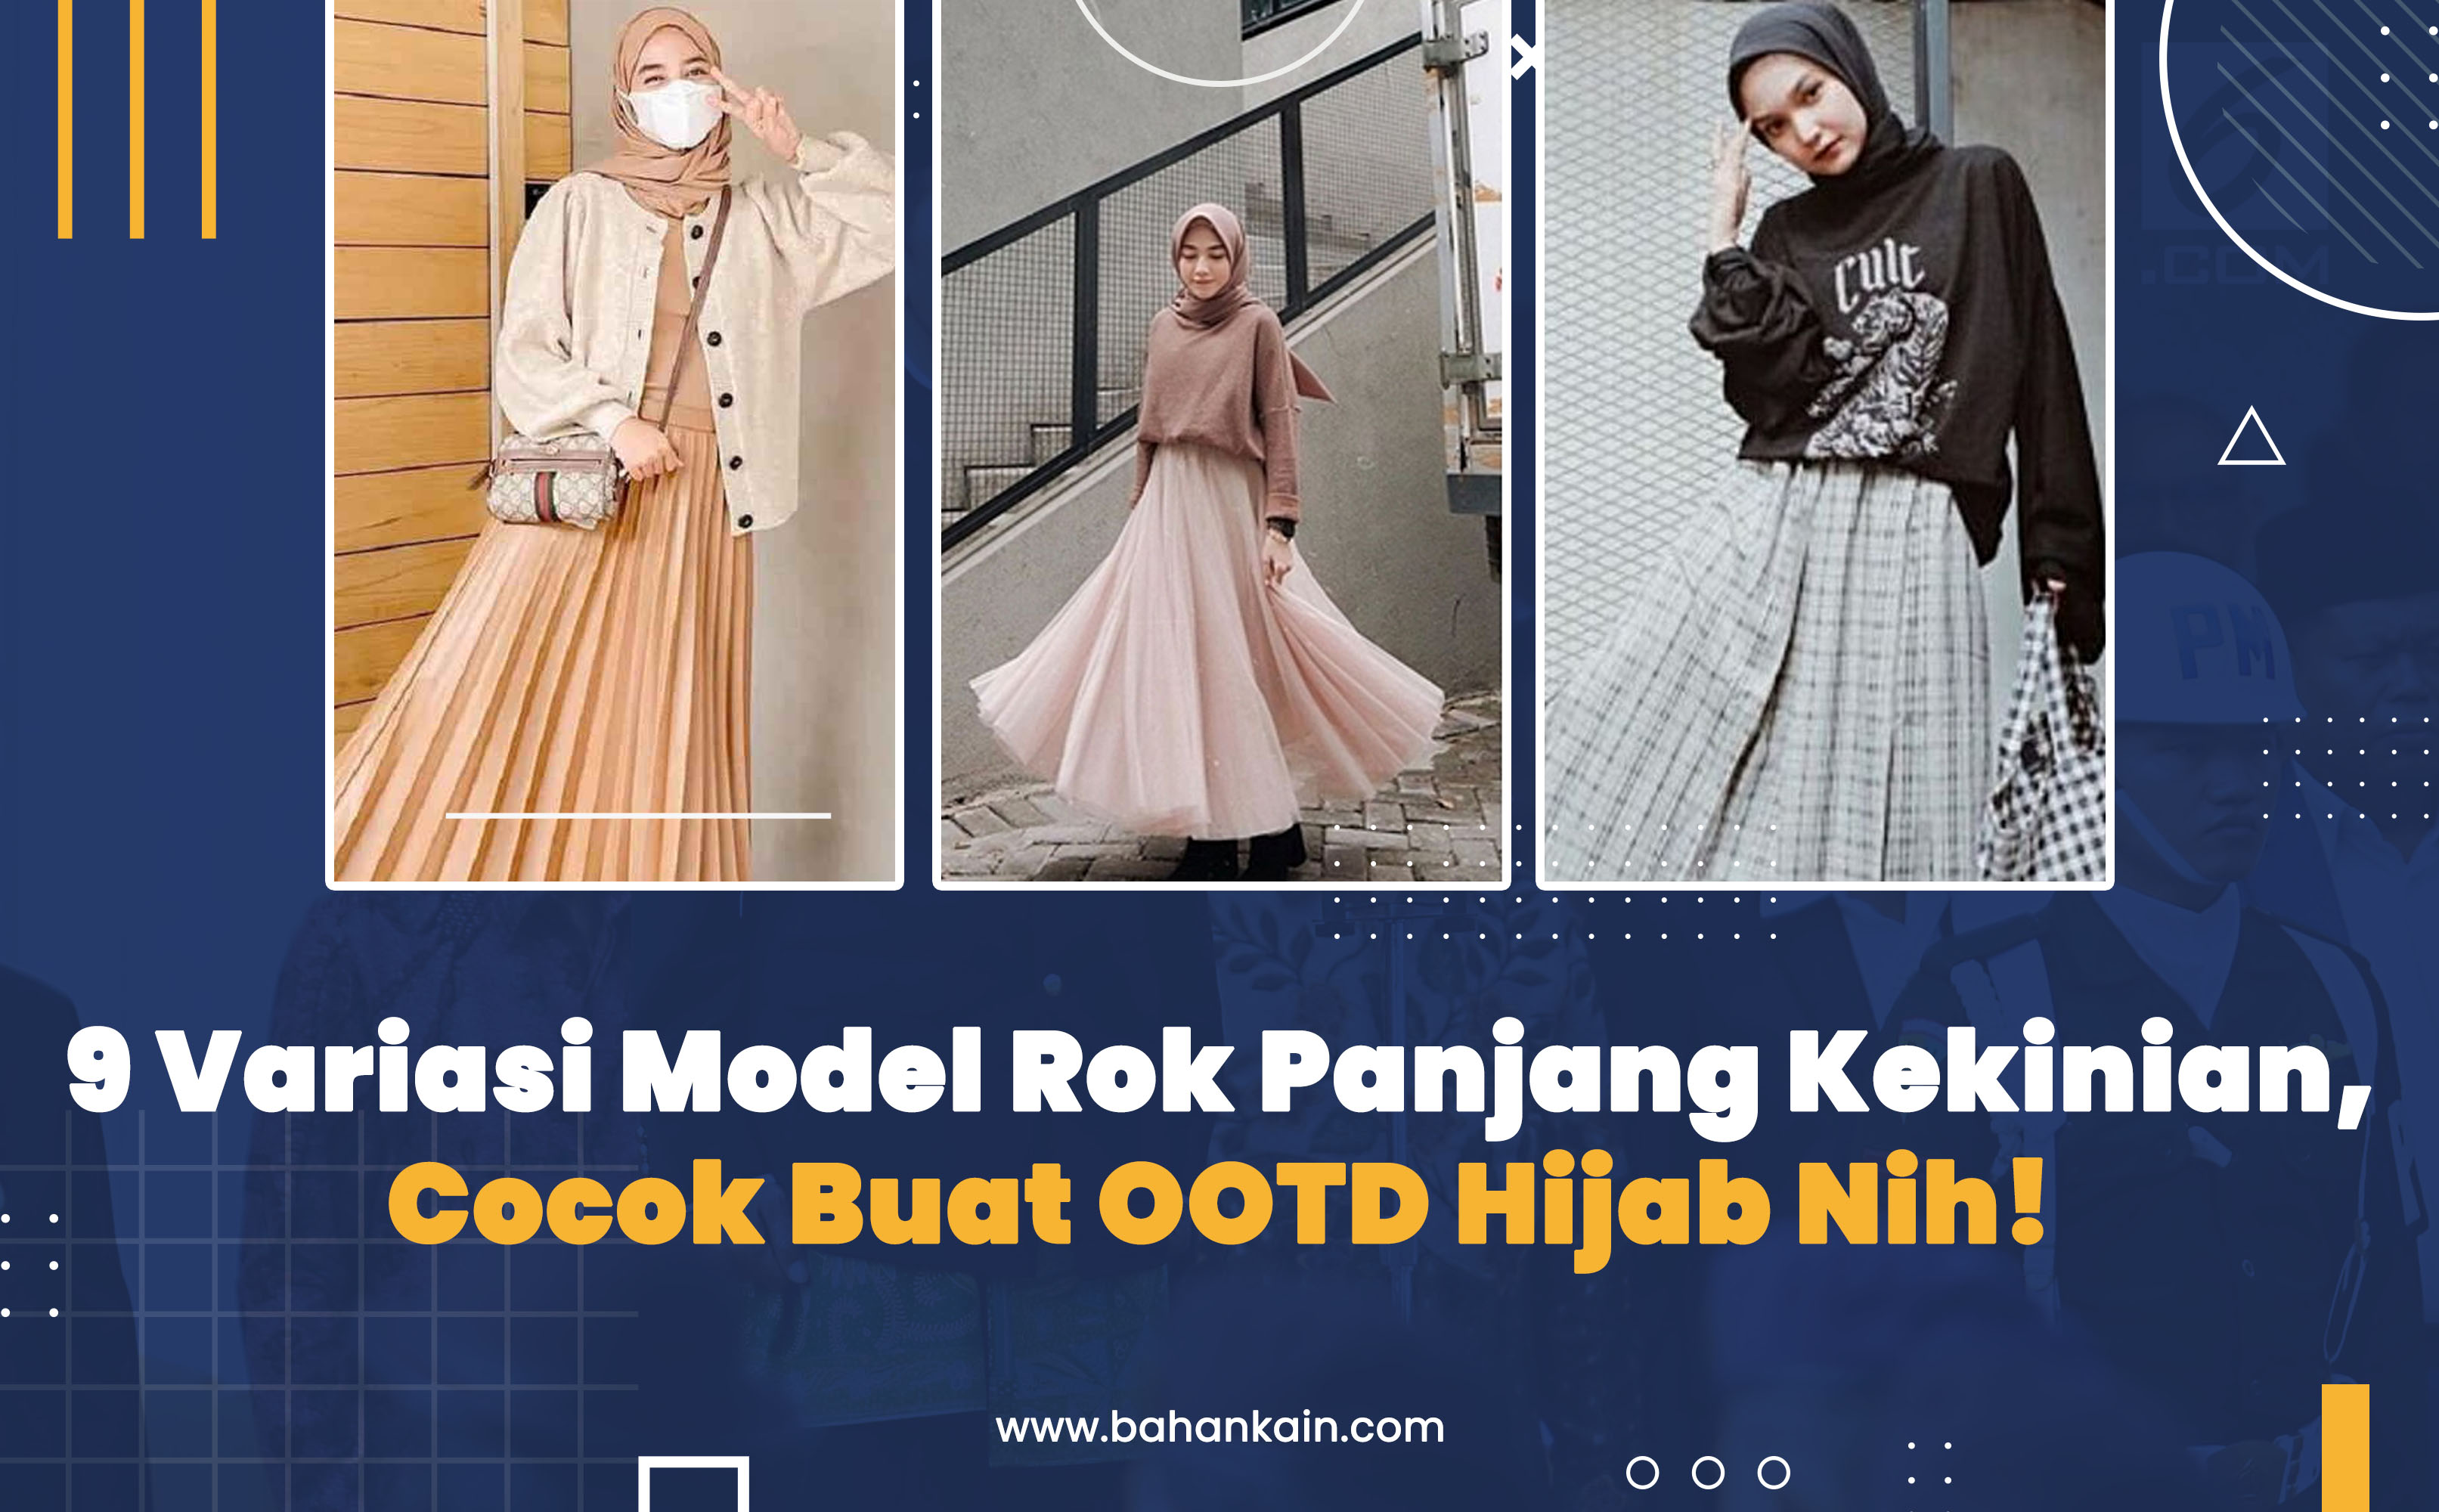 9 Variasi Model Rok Panjang Kekinian, Cocok Buat OOTD Hijab Nih!